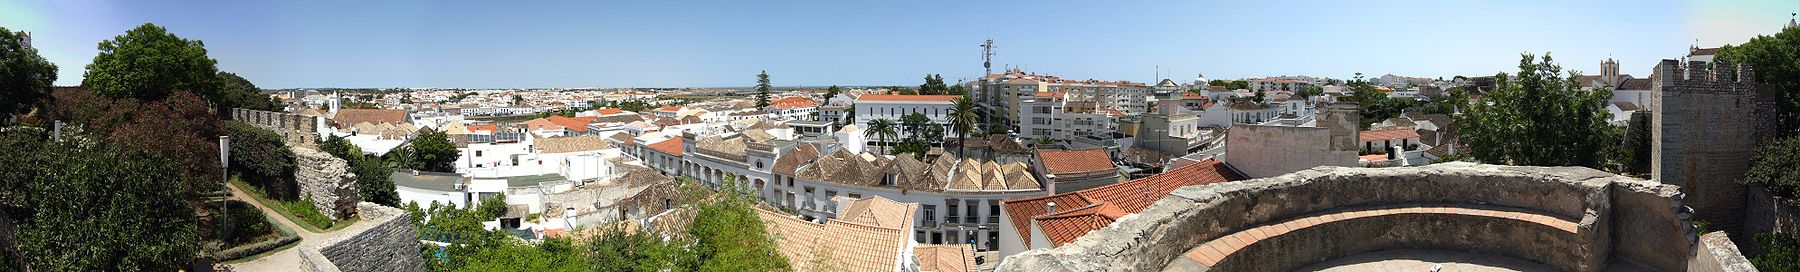 Panorama-Ansicht von Tavira heute, vom Schloss aus gesehen